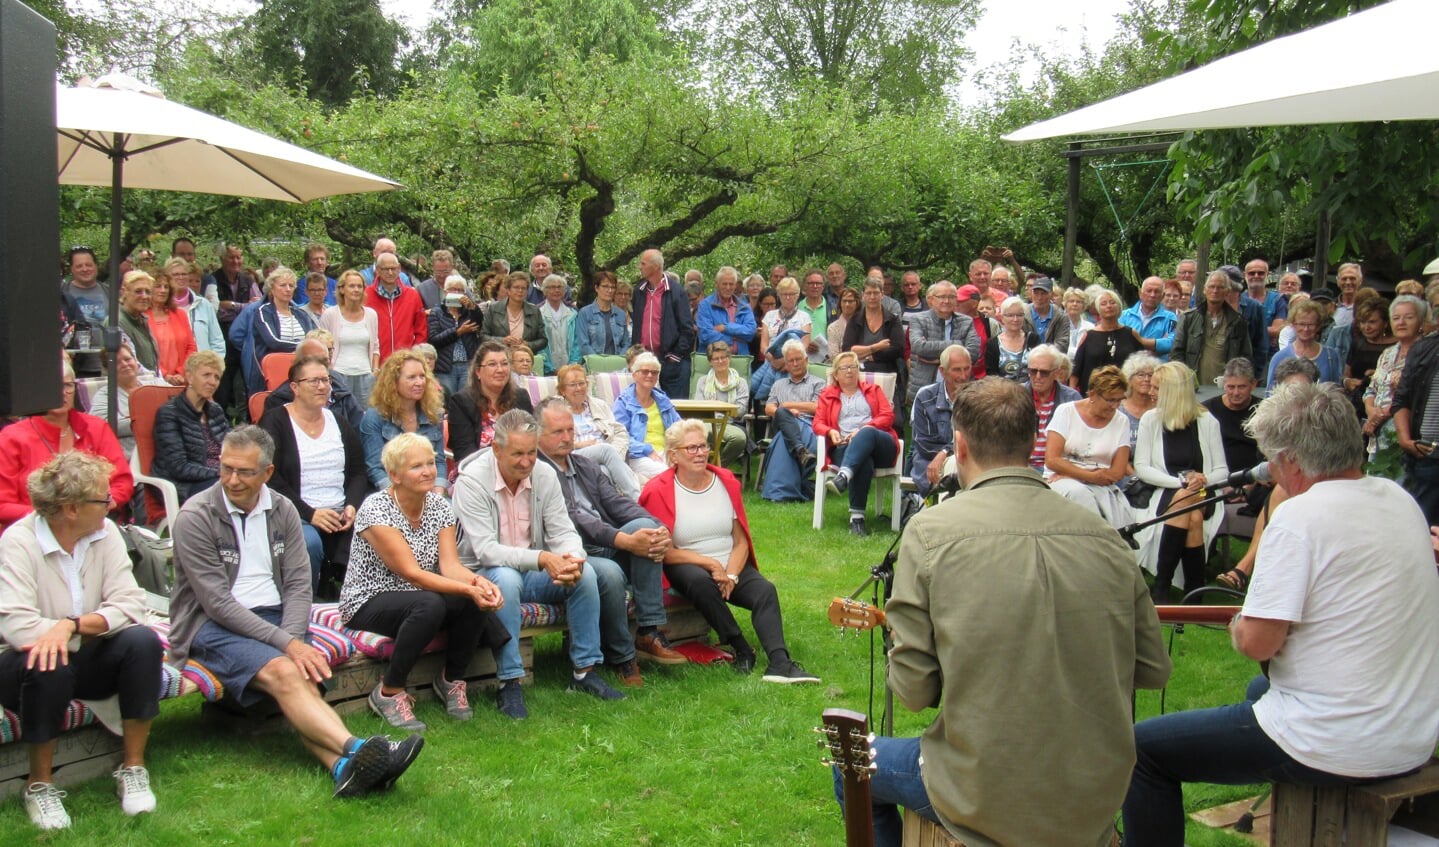 Marcel Kapteijn and The Raindogs zong en speelde constant voor een tokvolle boomgaard. (Foto: John Bontje)